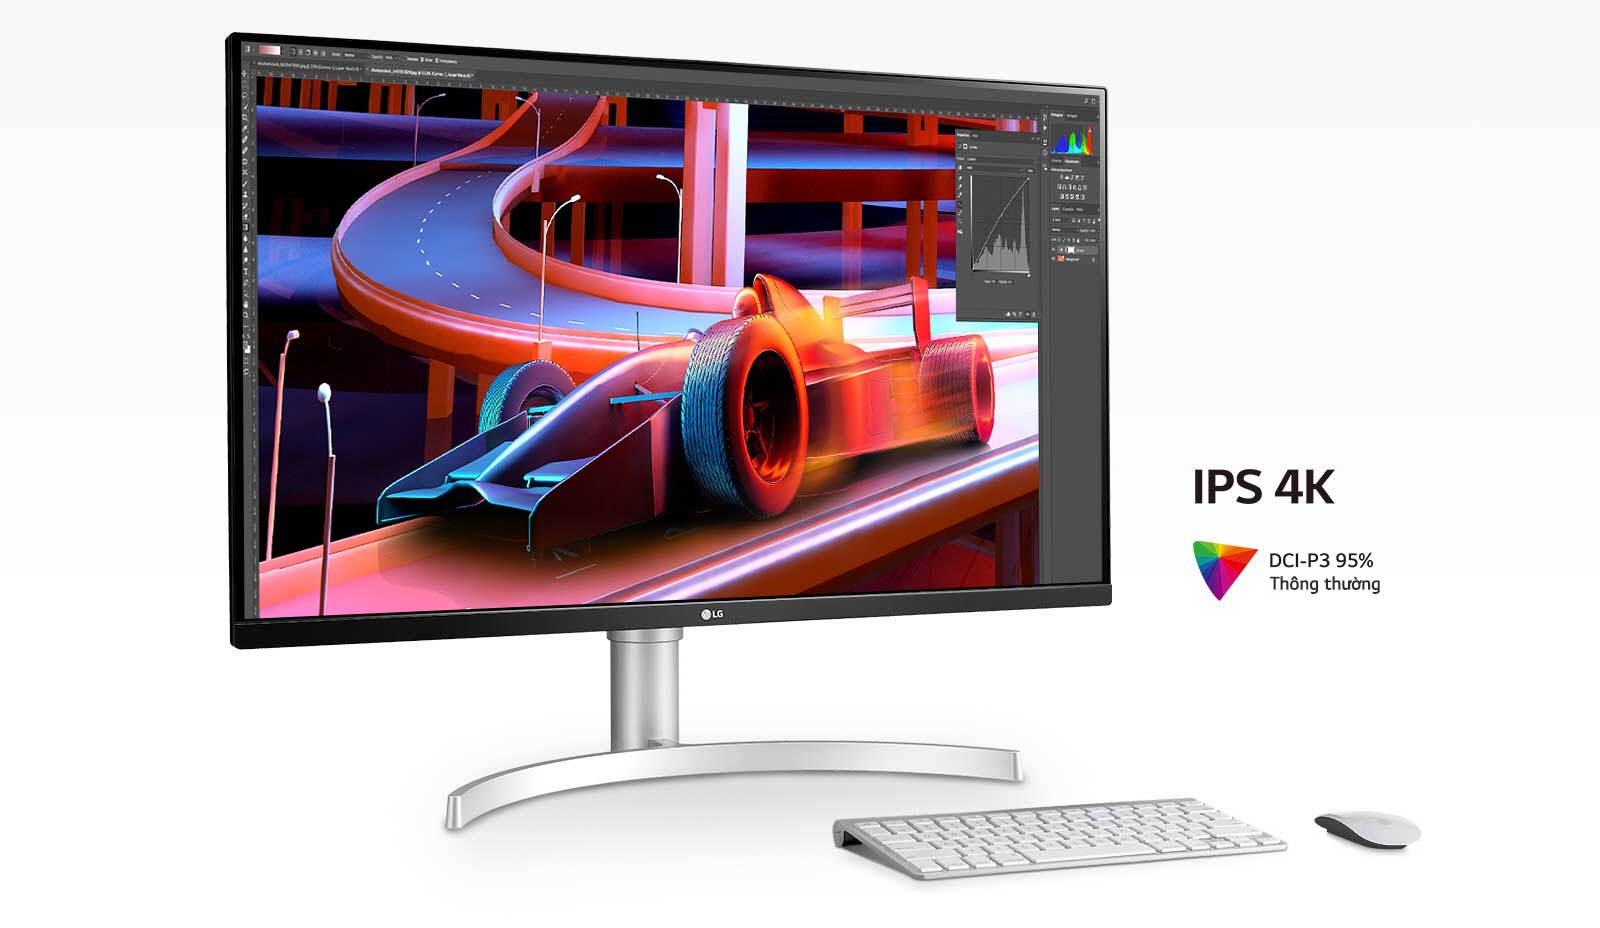 IPS 4K và DCI-P3 95% (Thông thường) thể hiện hình ảnh rõ ràng, chính xác và màu sắc phù hợp